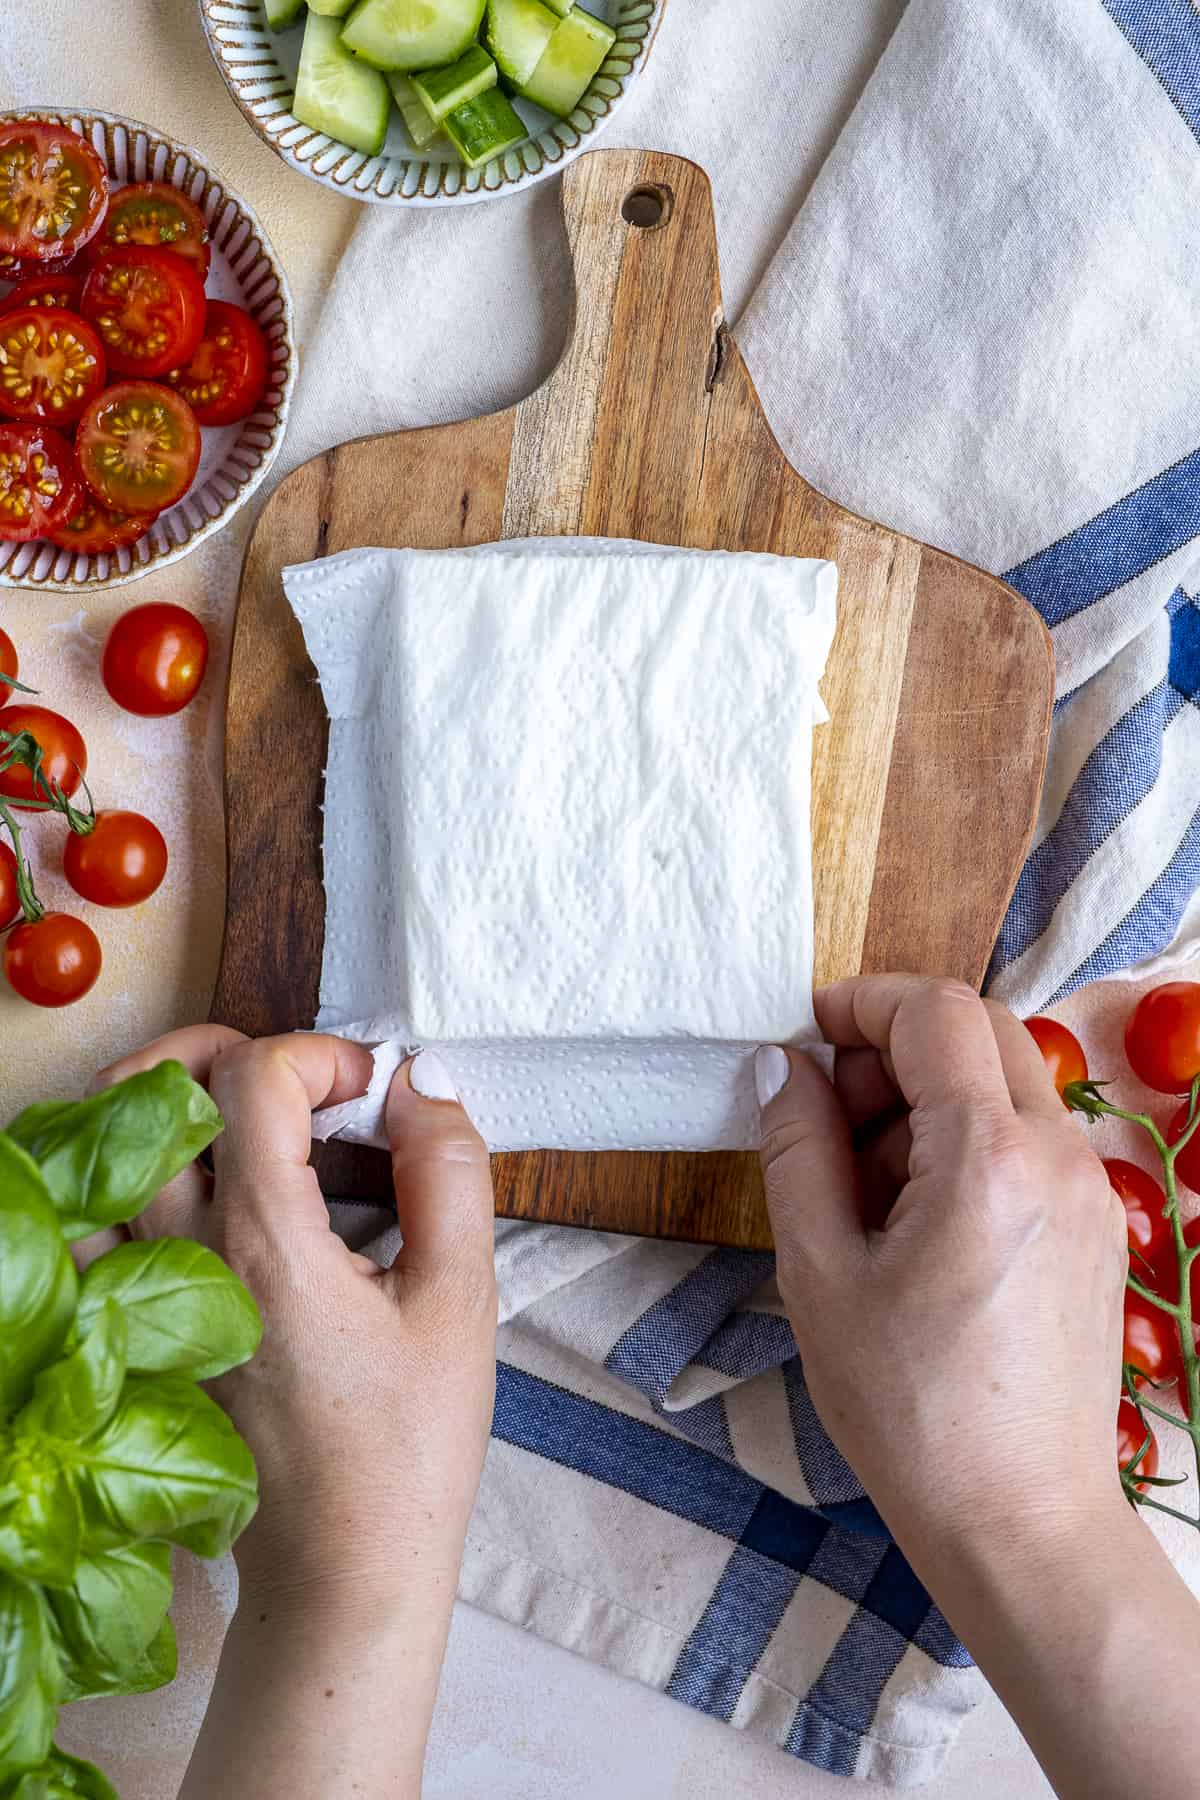 双手用湿纸巾包着一块菲达奶酪。切好的西红柿，黄瓜和新鲜的罗勒。